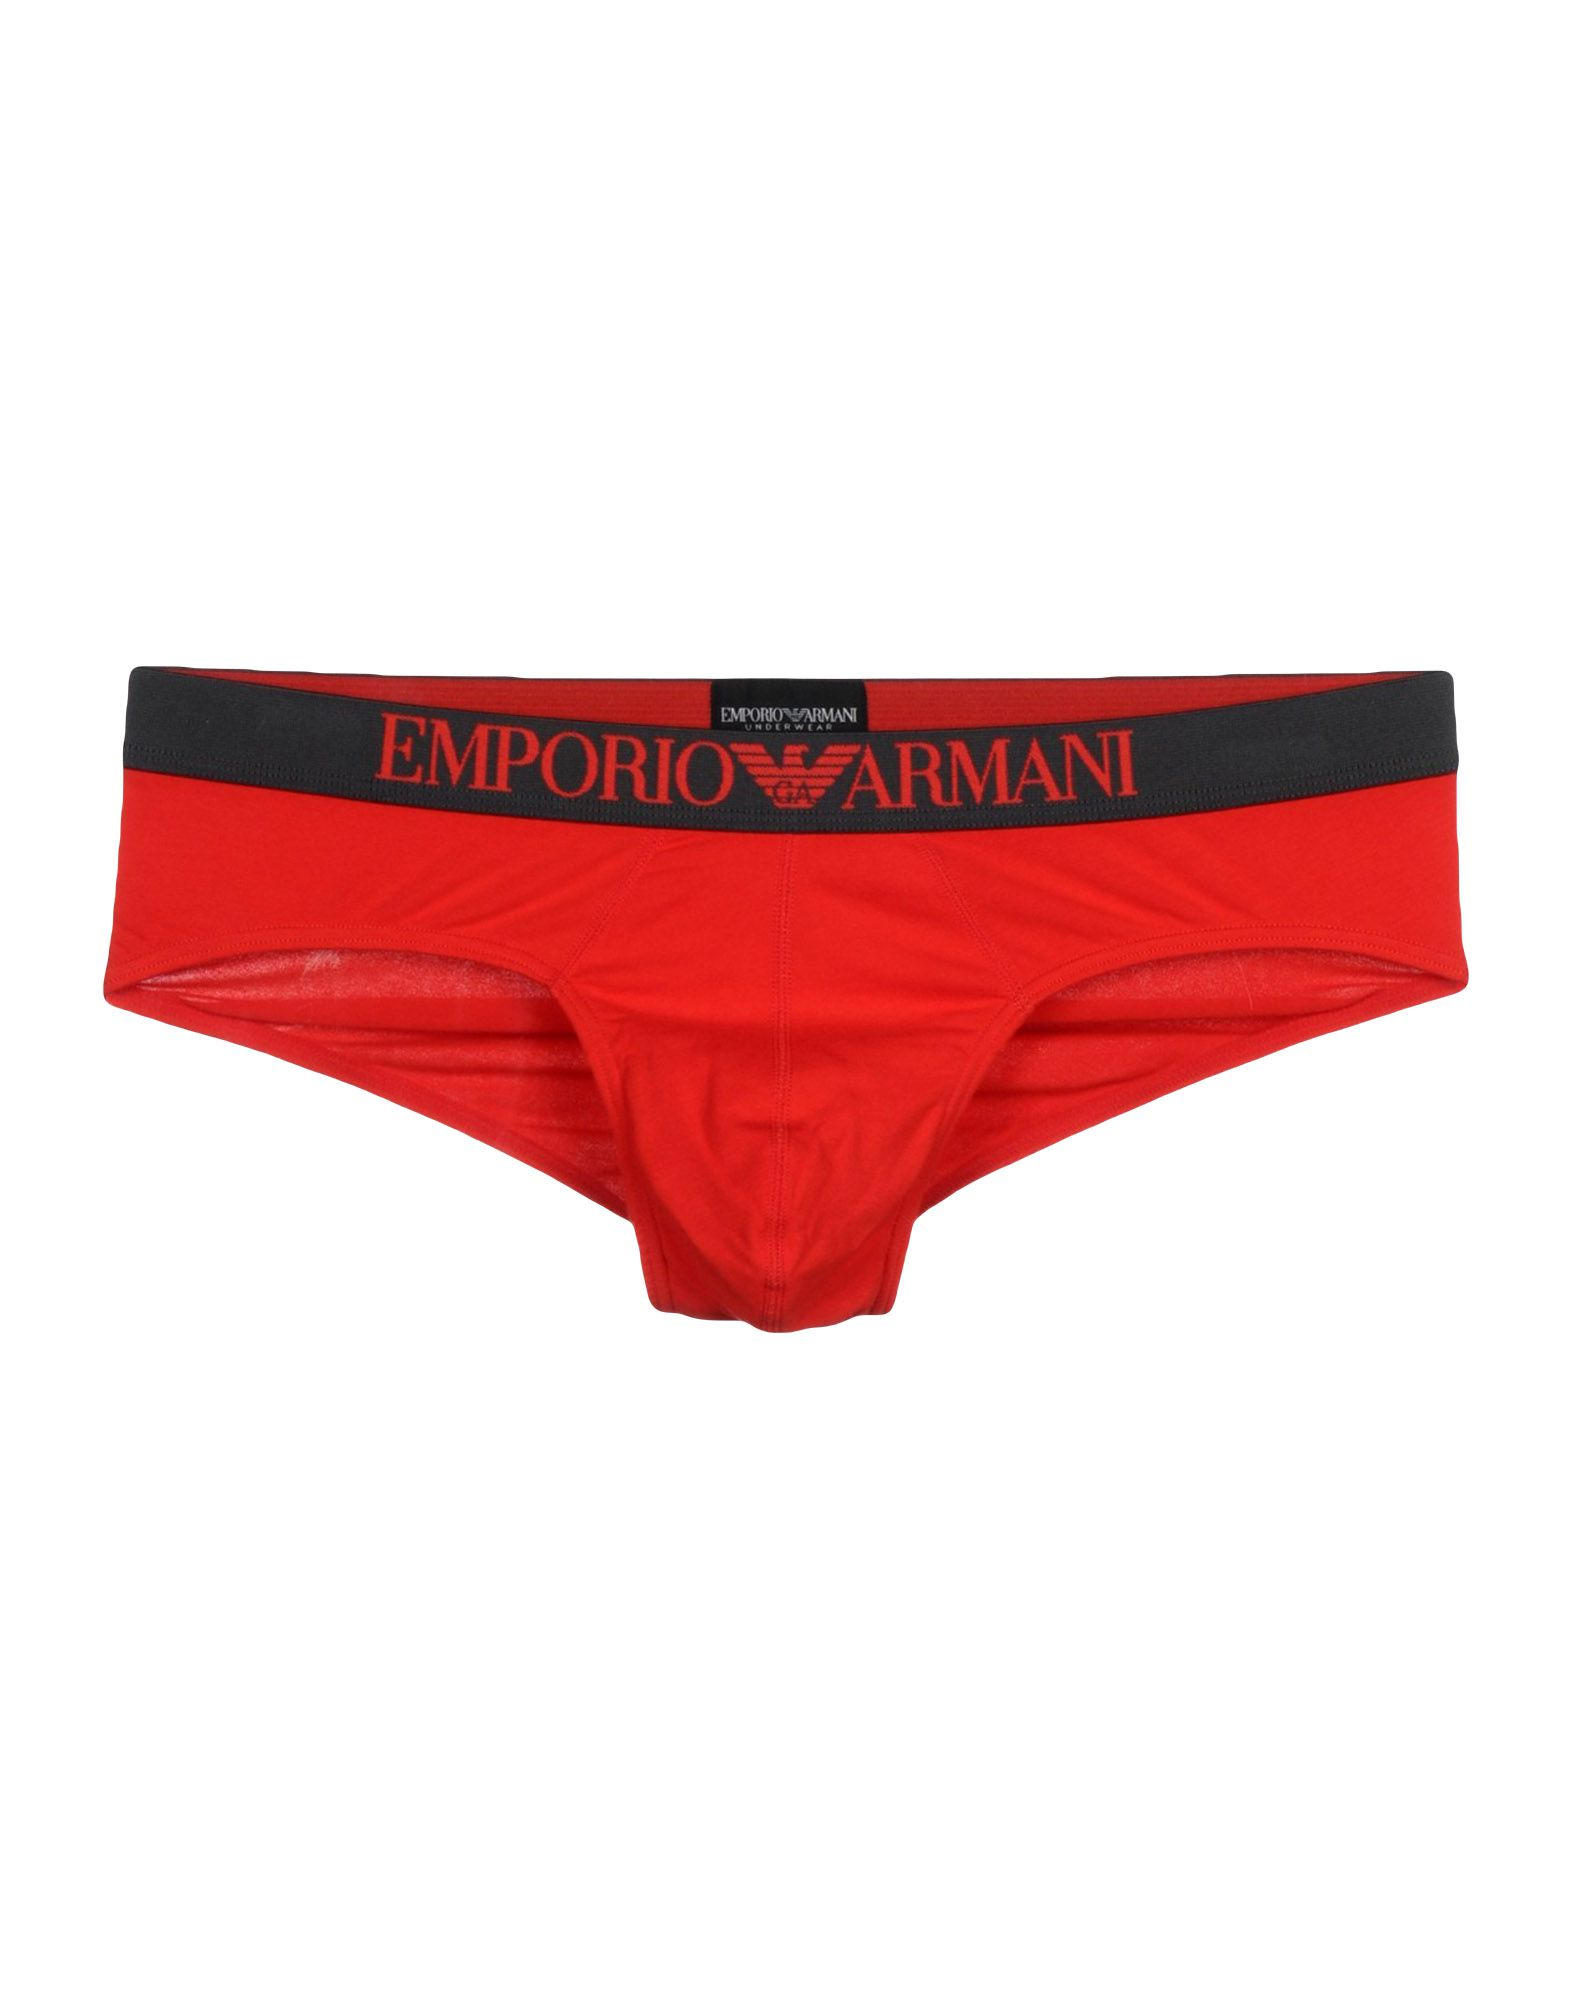 Emporio armani Brief in Red for Men | Lyst